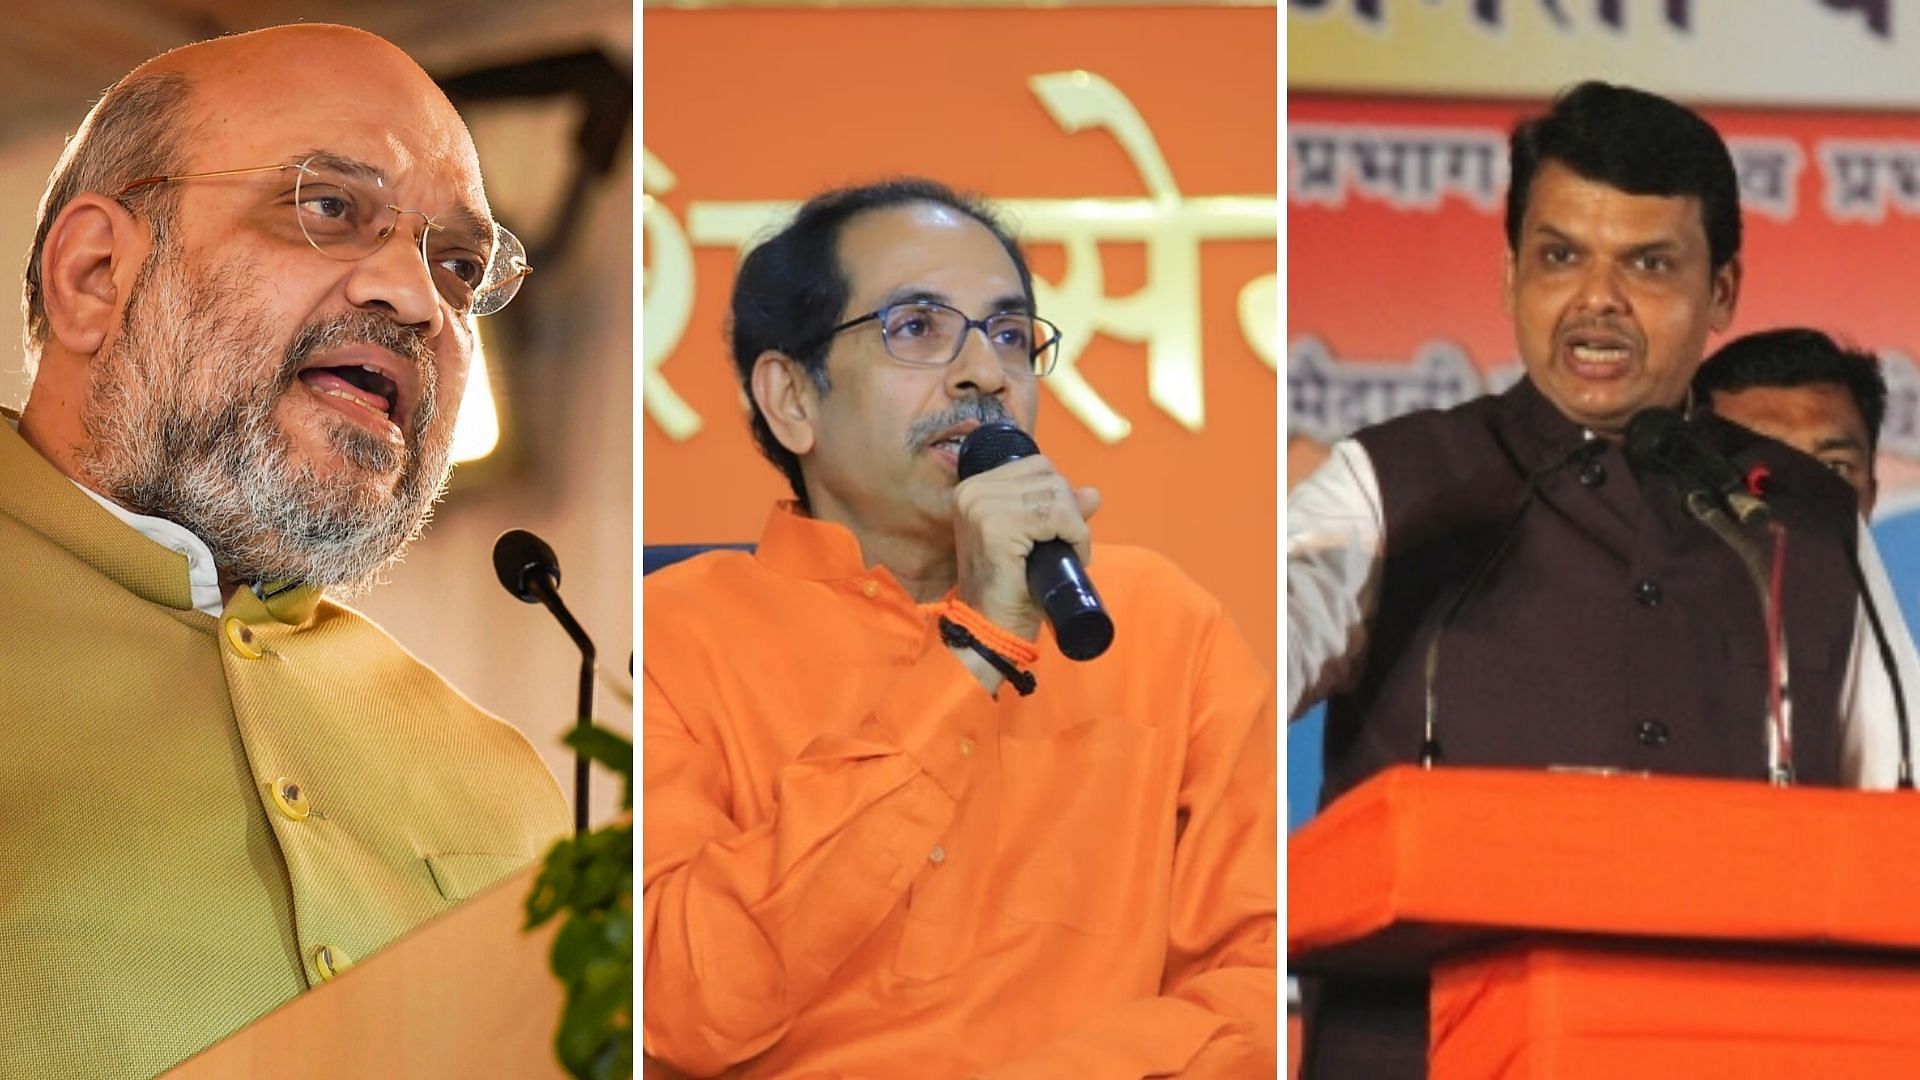 From left to right: BJP President Amit Shah, Shiv Sena Chief Uddhav Thackeray and Maharashtra Chief Minister Devendra Fadnavis.